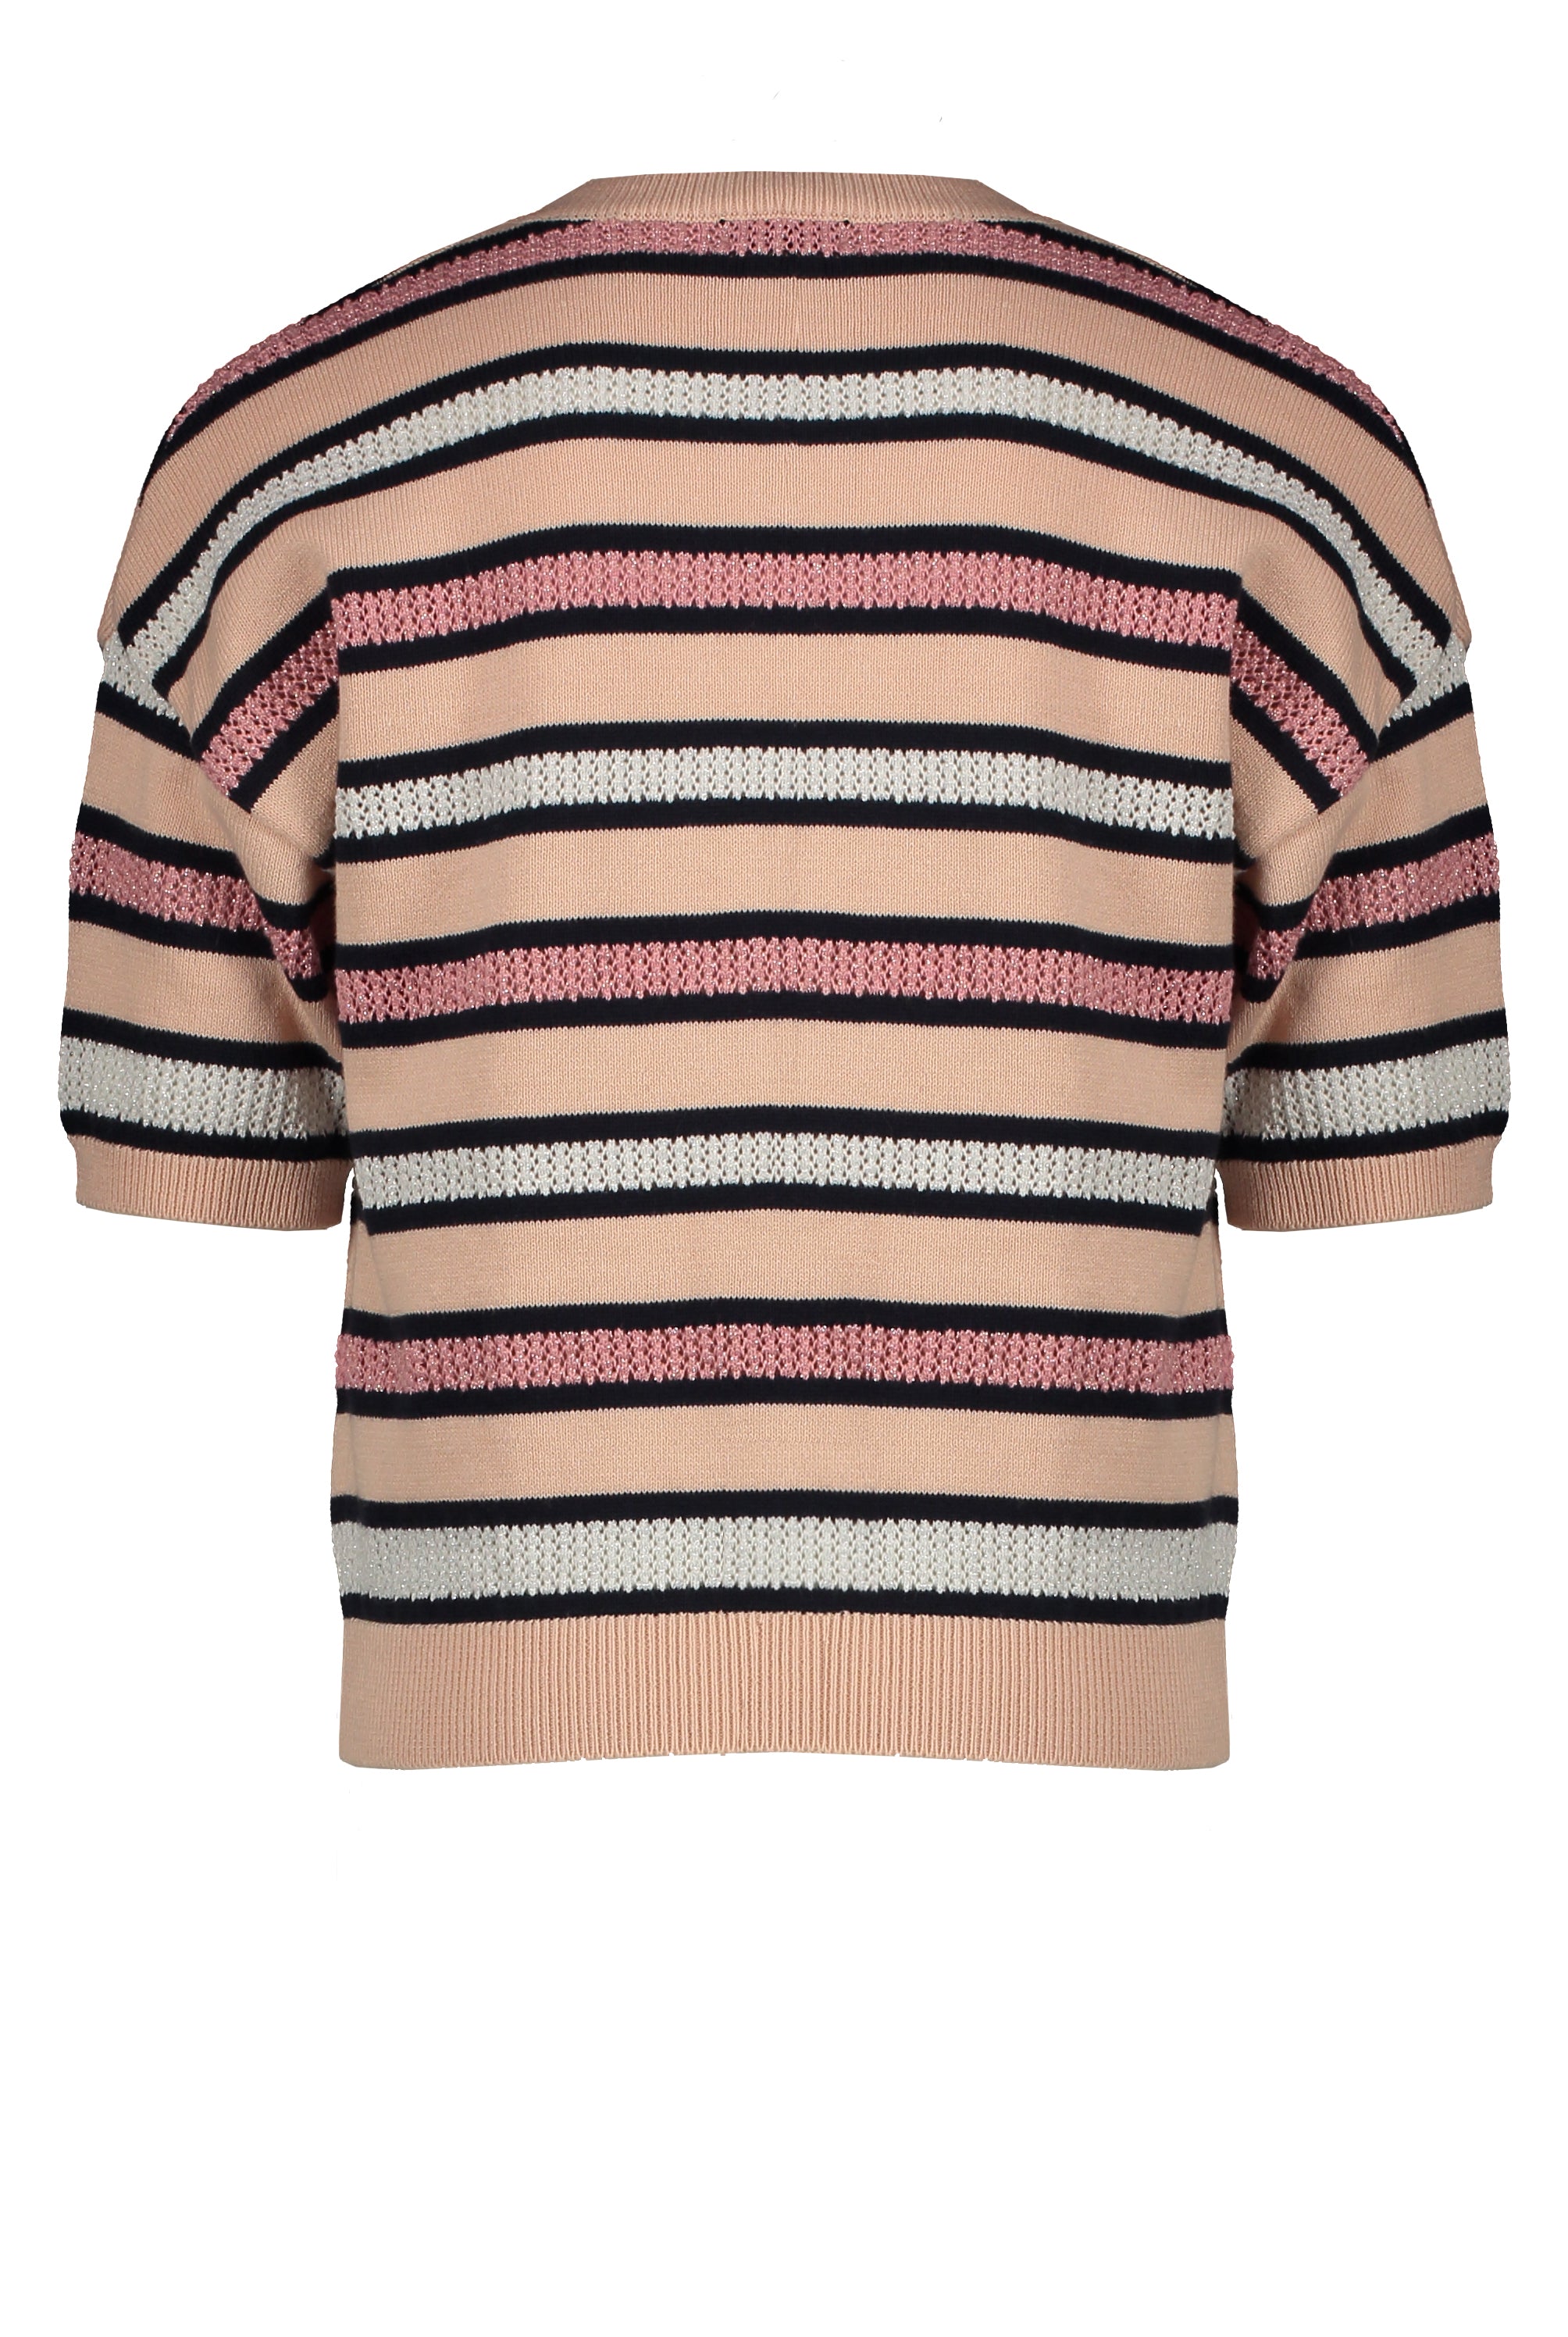 Meisjes Kess knitted striped s/sl sweater van NoNo in de kleur Rosy Sand in maat 146/152.